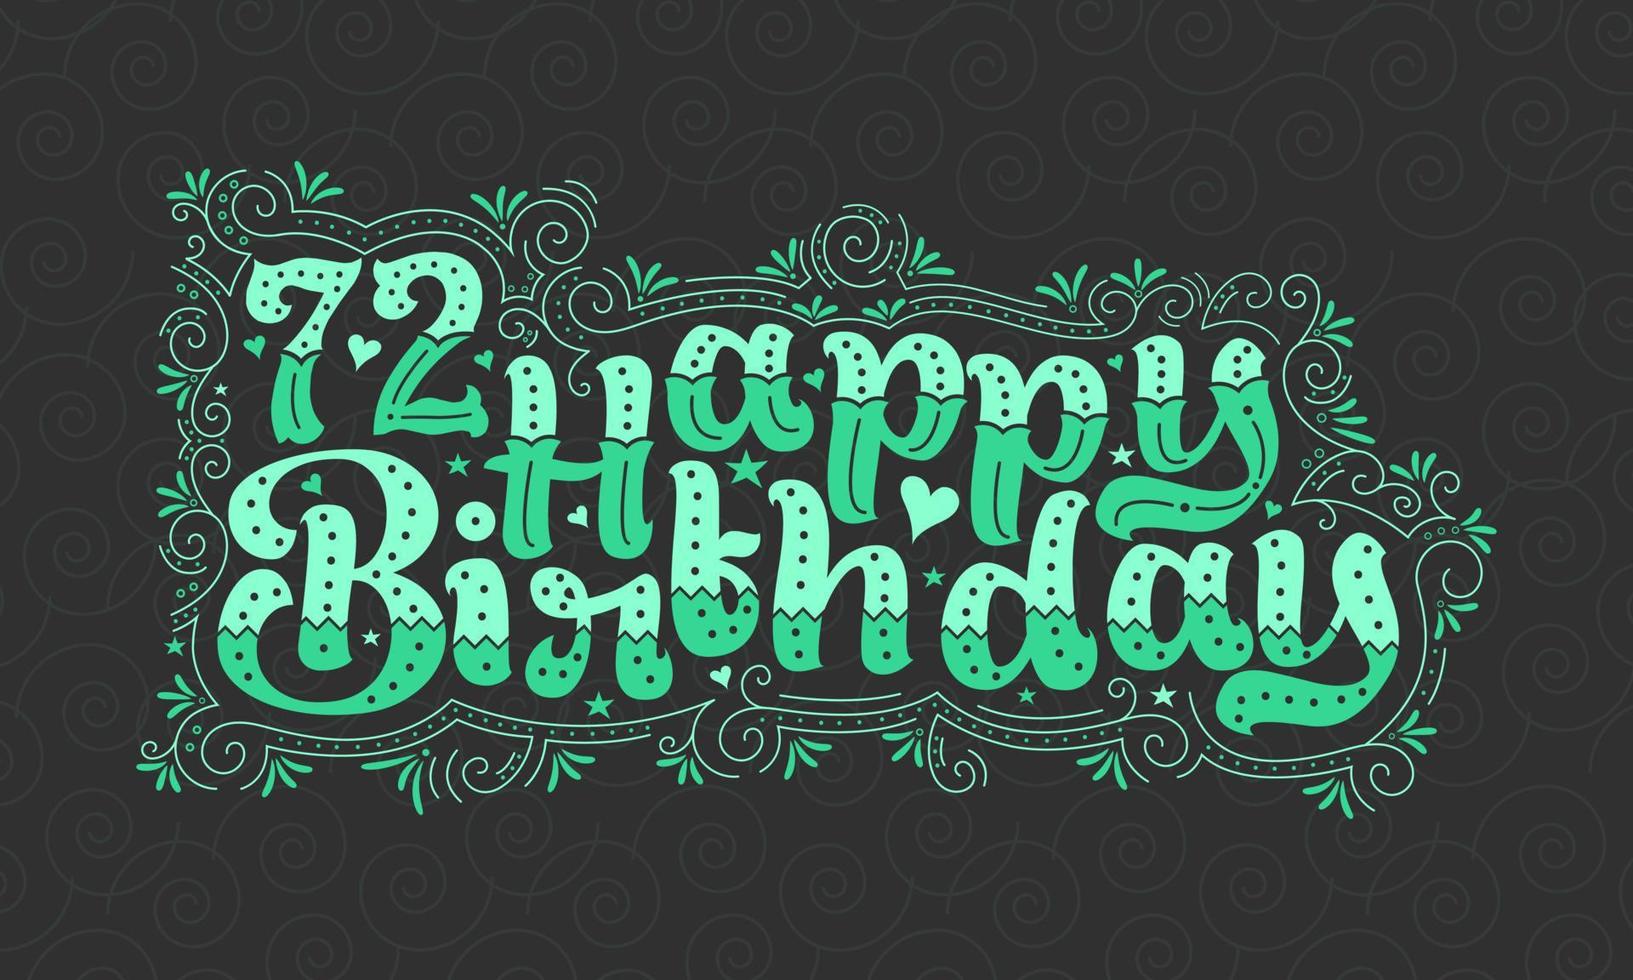 72. Happy Birthday Schriftzug, 72 Jahre Geburtstag schönes Typografie-Design mit grünen Punkten, Linien und Blättern. vektor